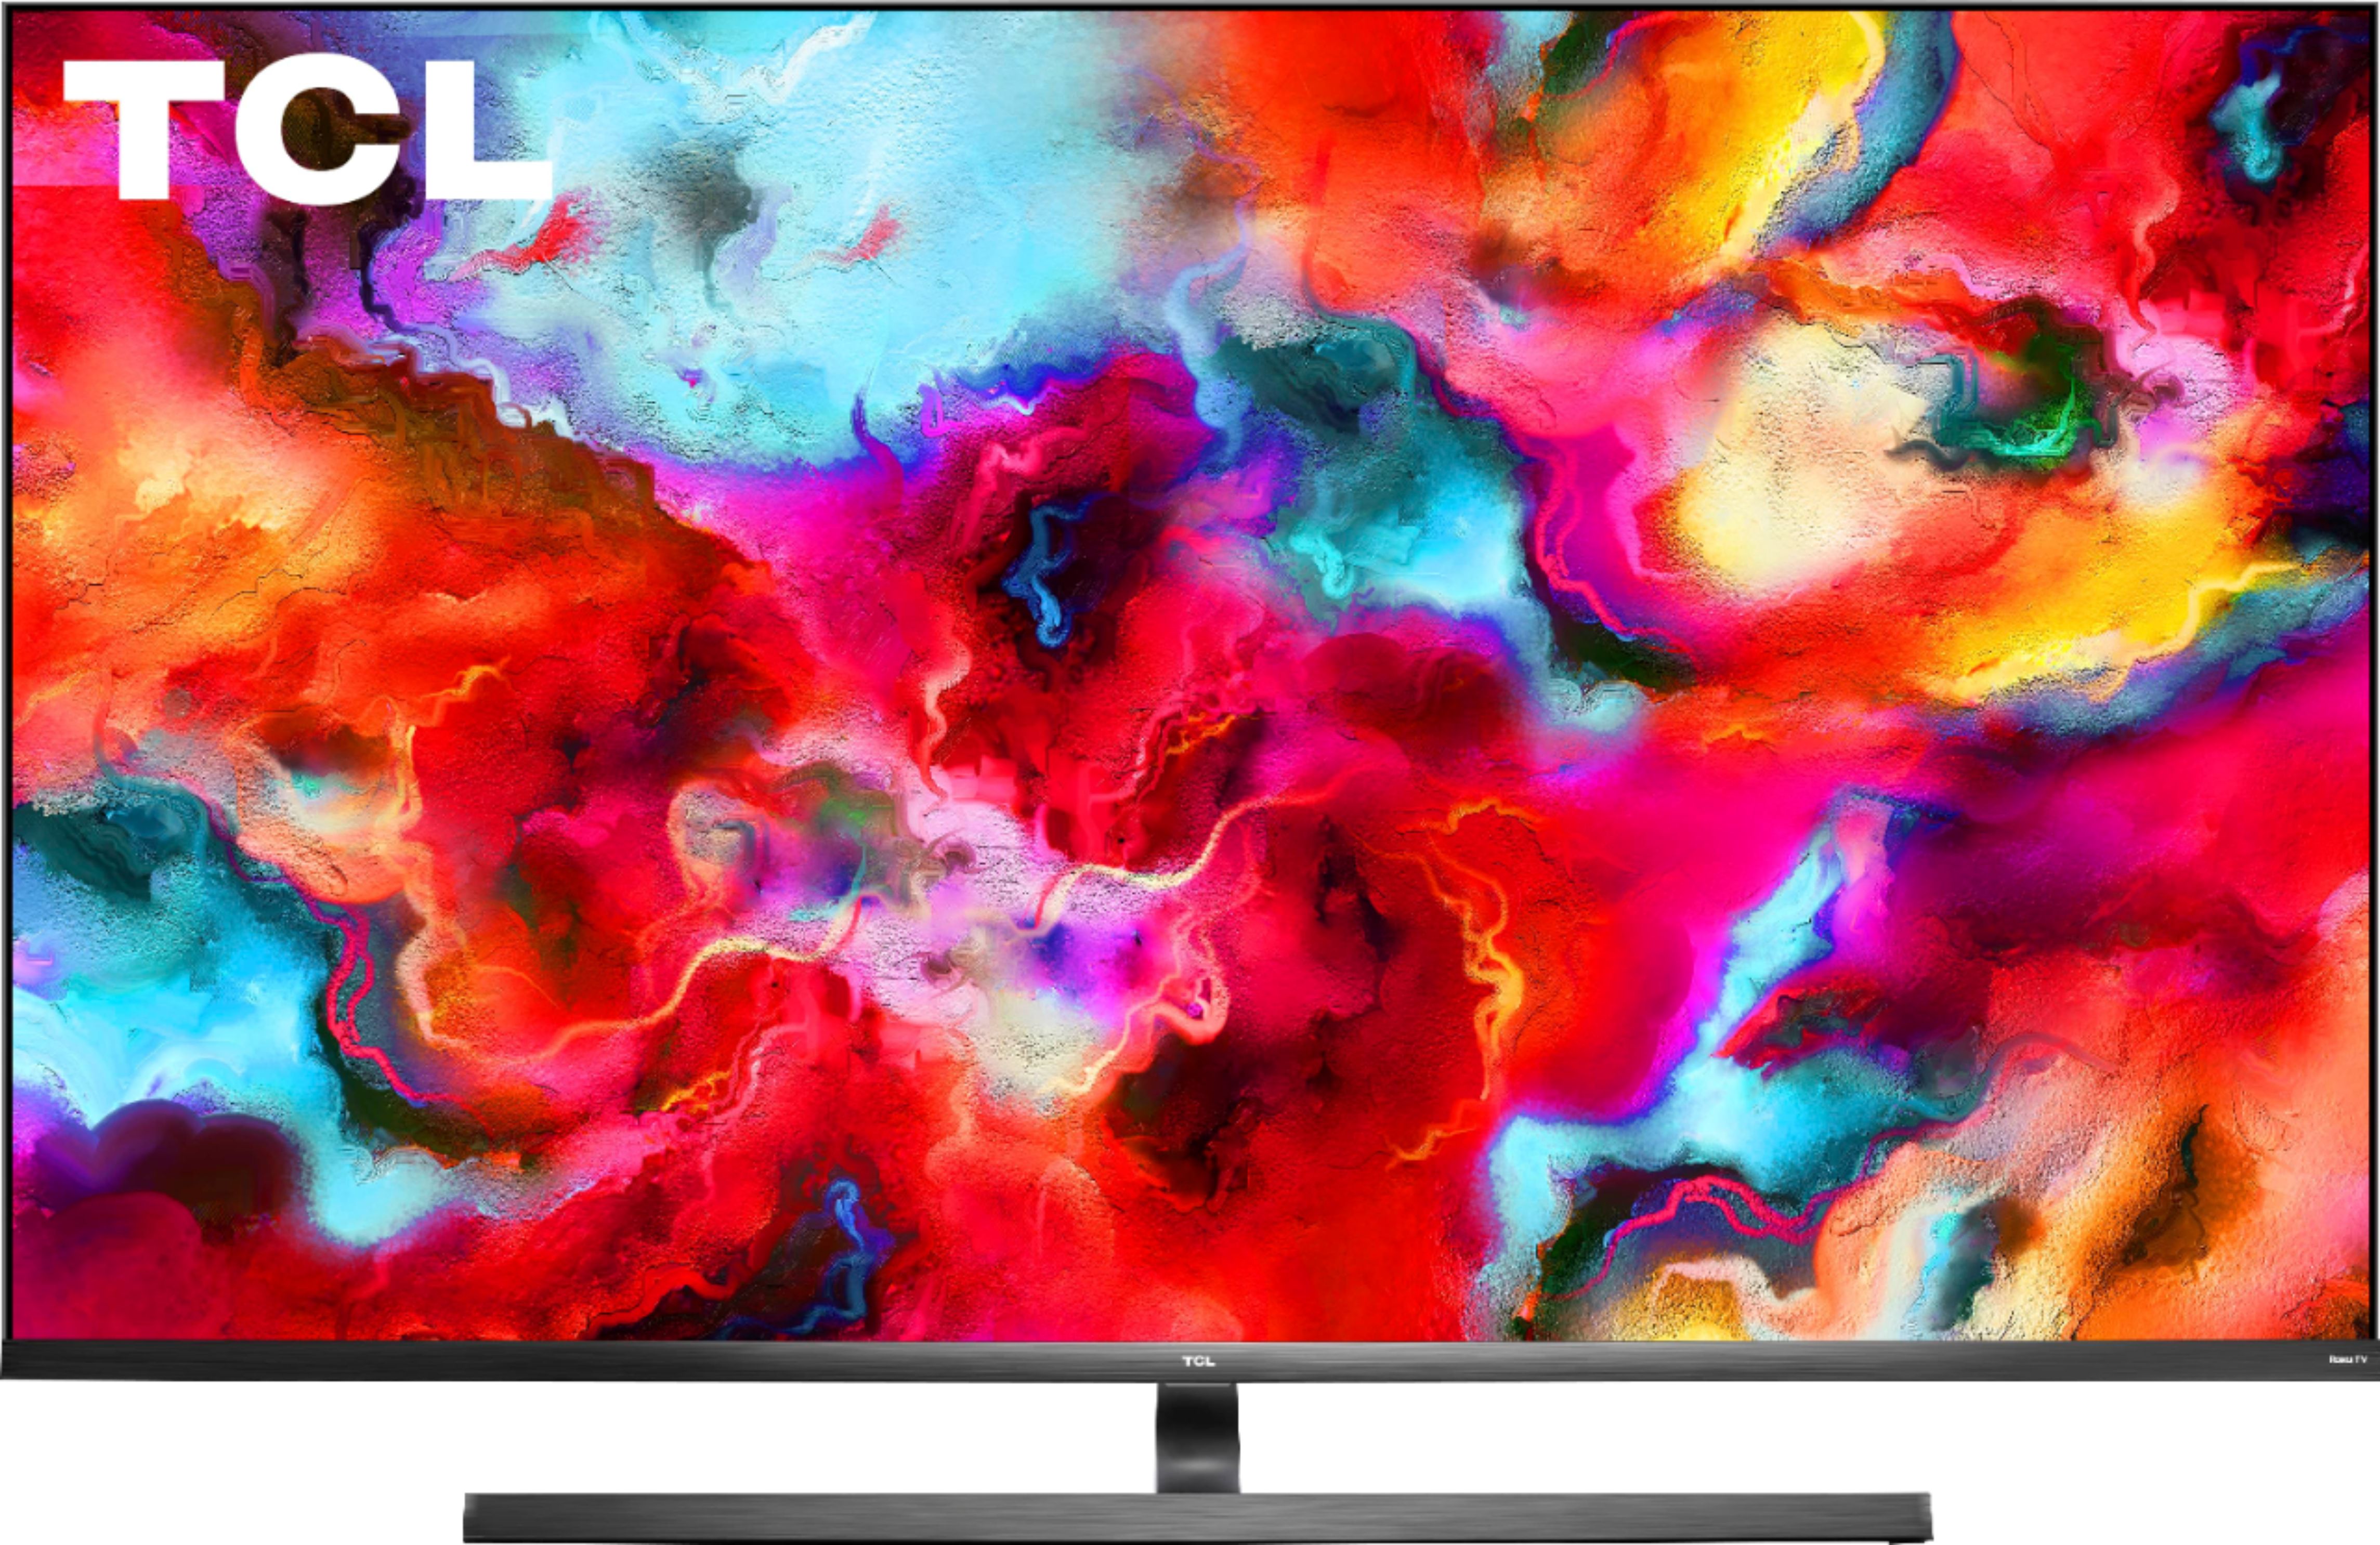 TCL QLED MINI LED TV 65” C845 4K UHD GOOGLE TV DOLBY VISION IQ